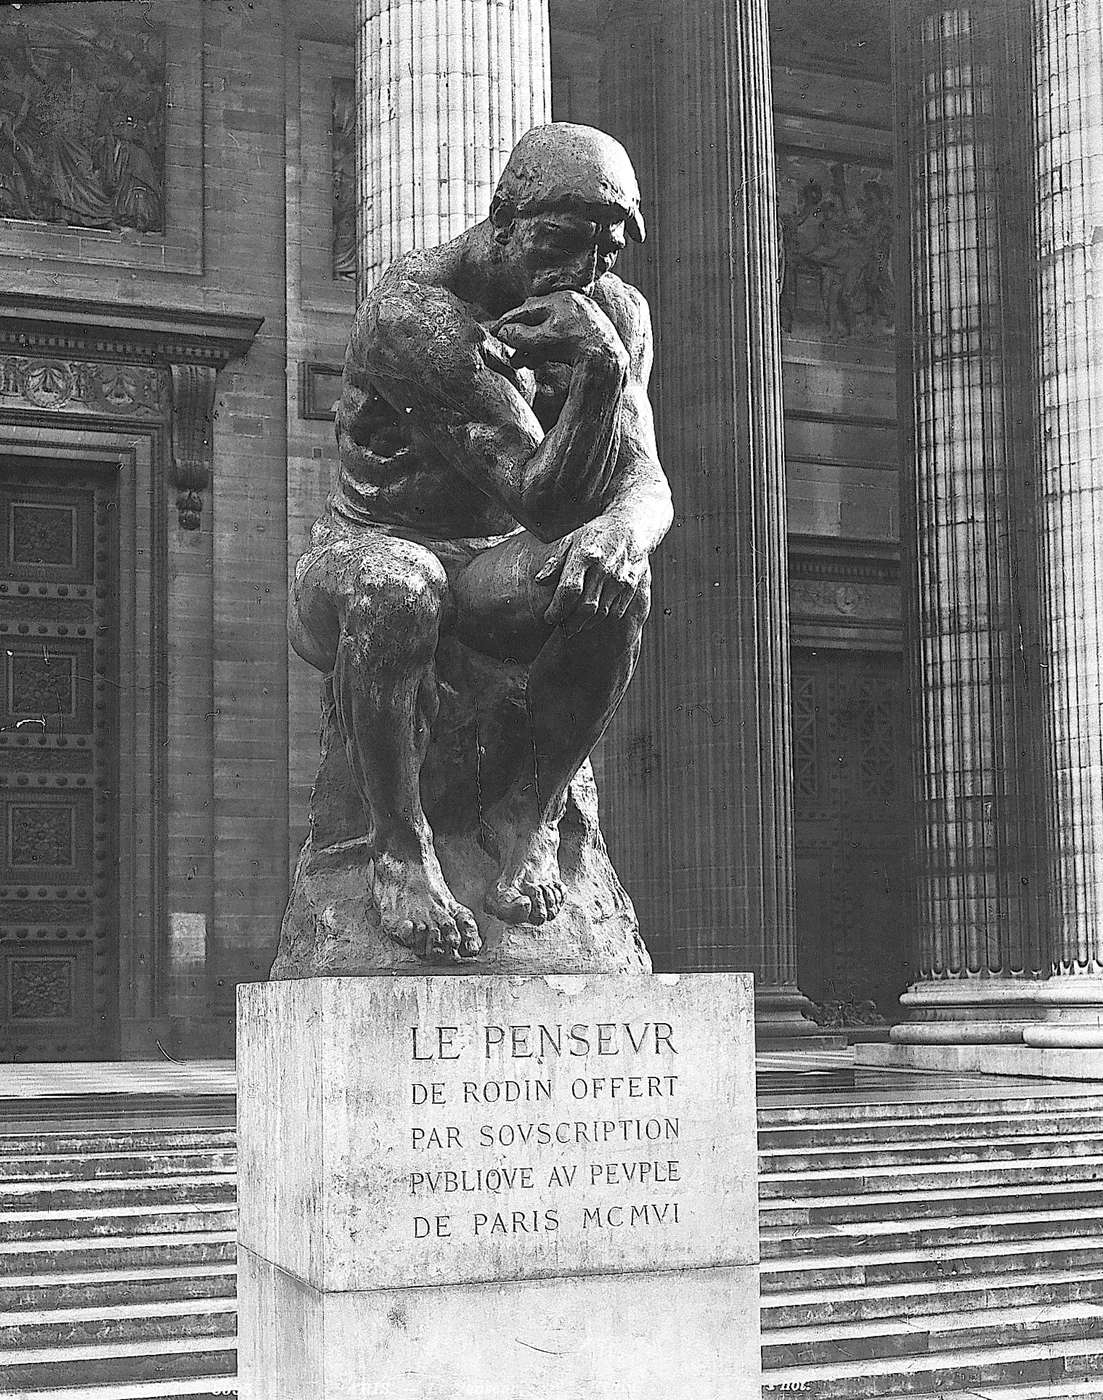 Le Penseur devant le Panthéon. (photographie anonyme)